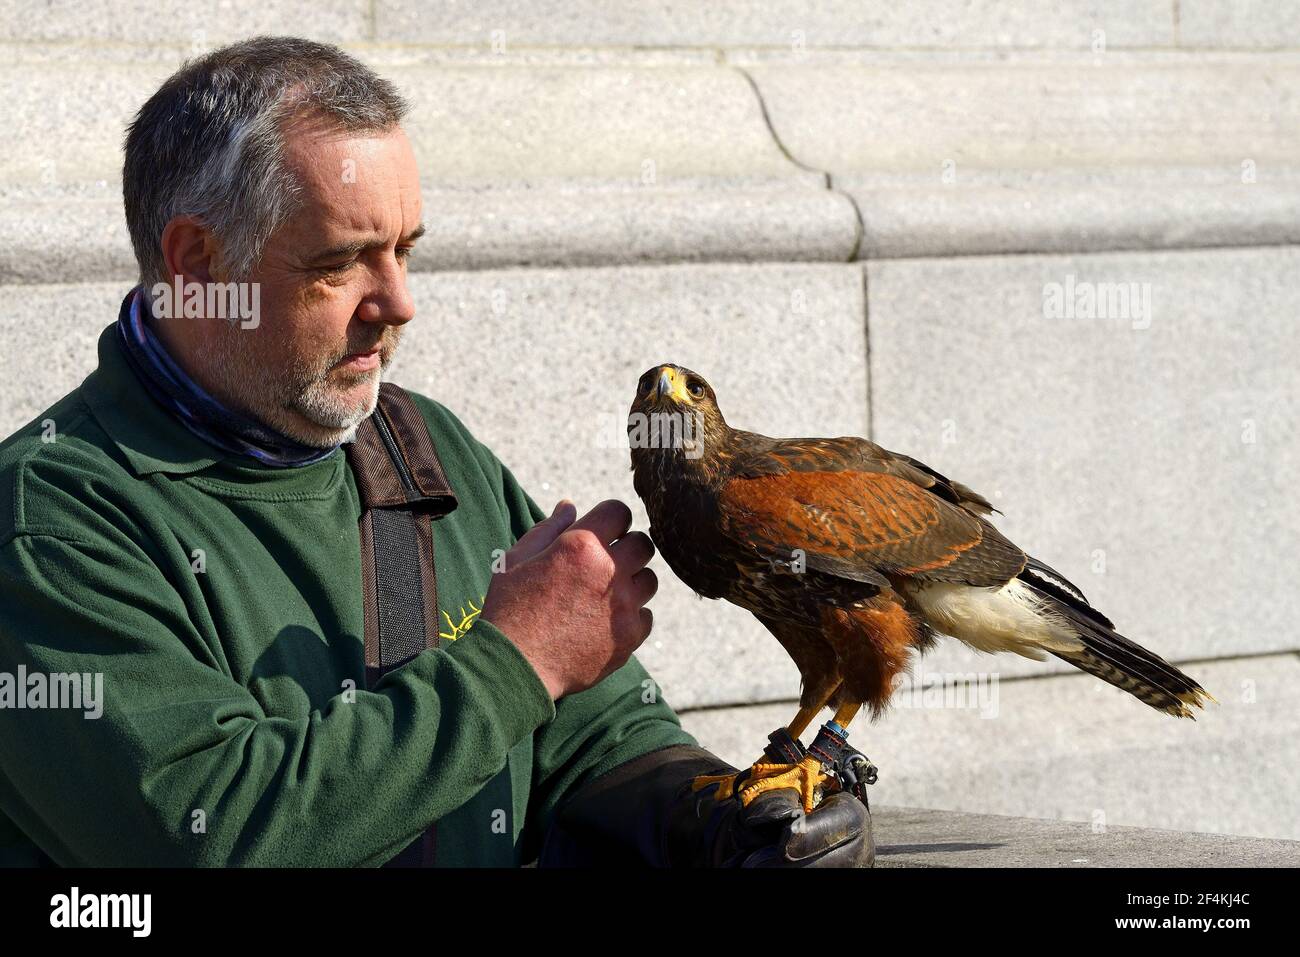 Londra, Inghilterra, Regno Unito. Trafalgar Square. Il falco di Harris (Parabuteo unicinctus - femmina) si allenò a cacciare i piccioni dalla piazza, con il suo Harris ha Foto Stock